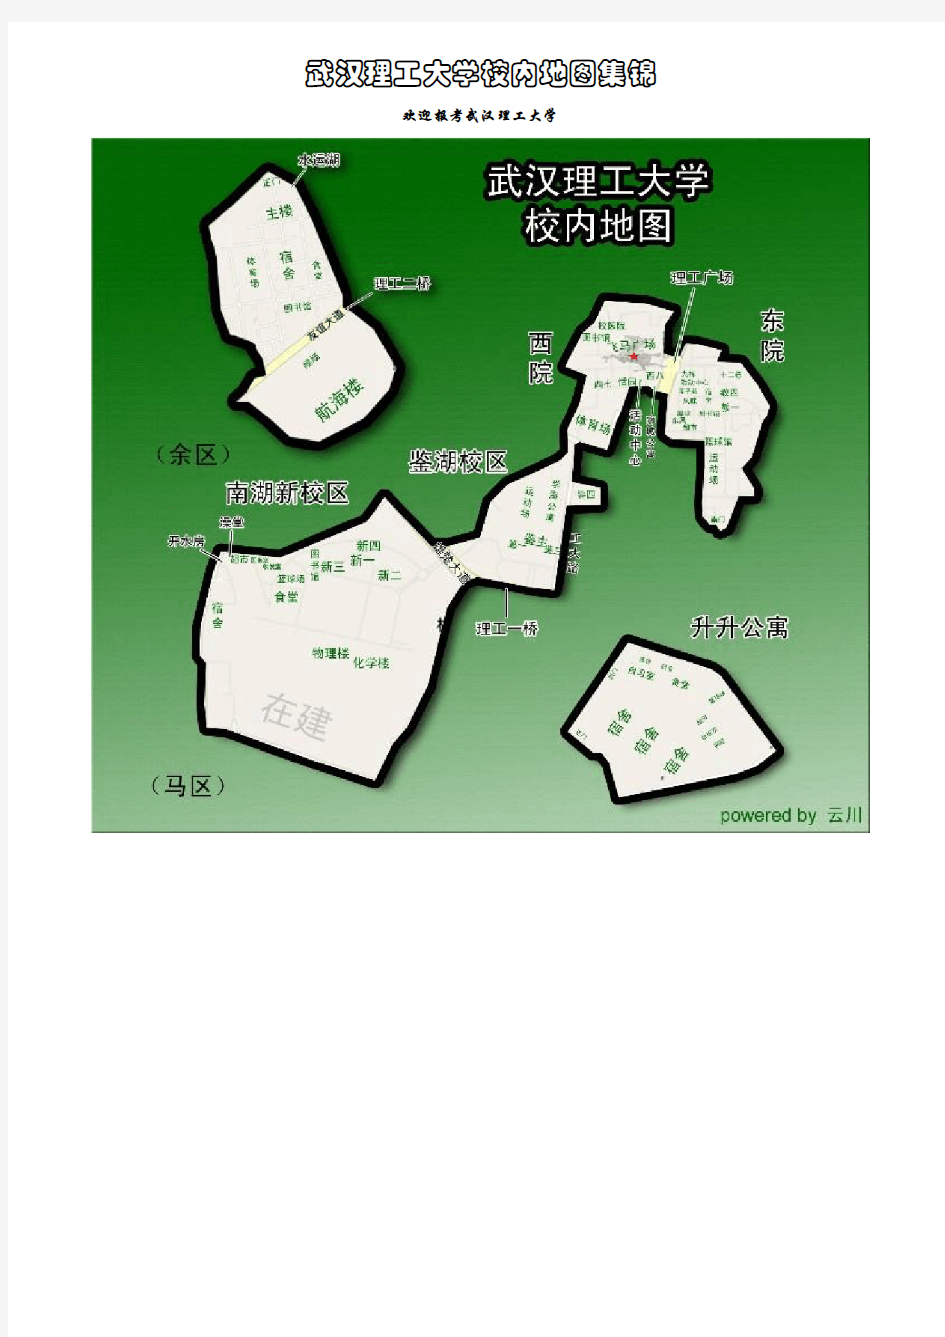 武汉理工大学校园地图(最全)